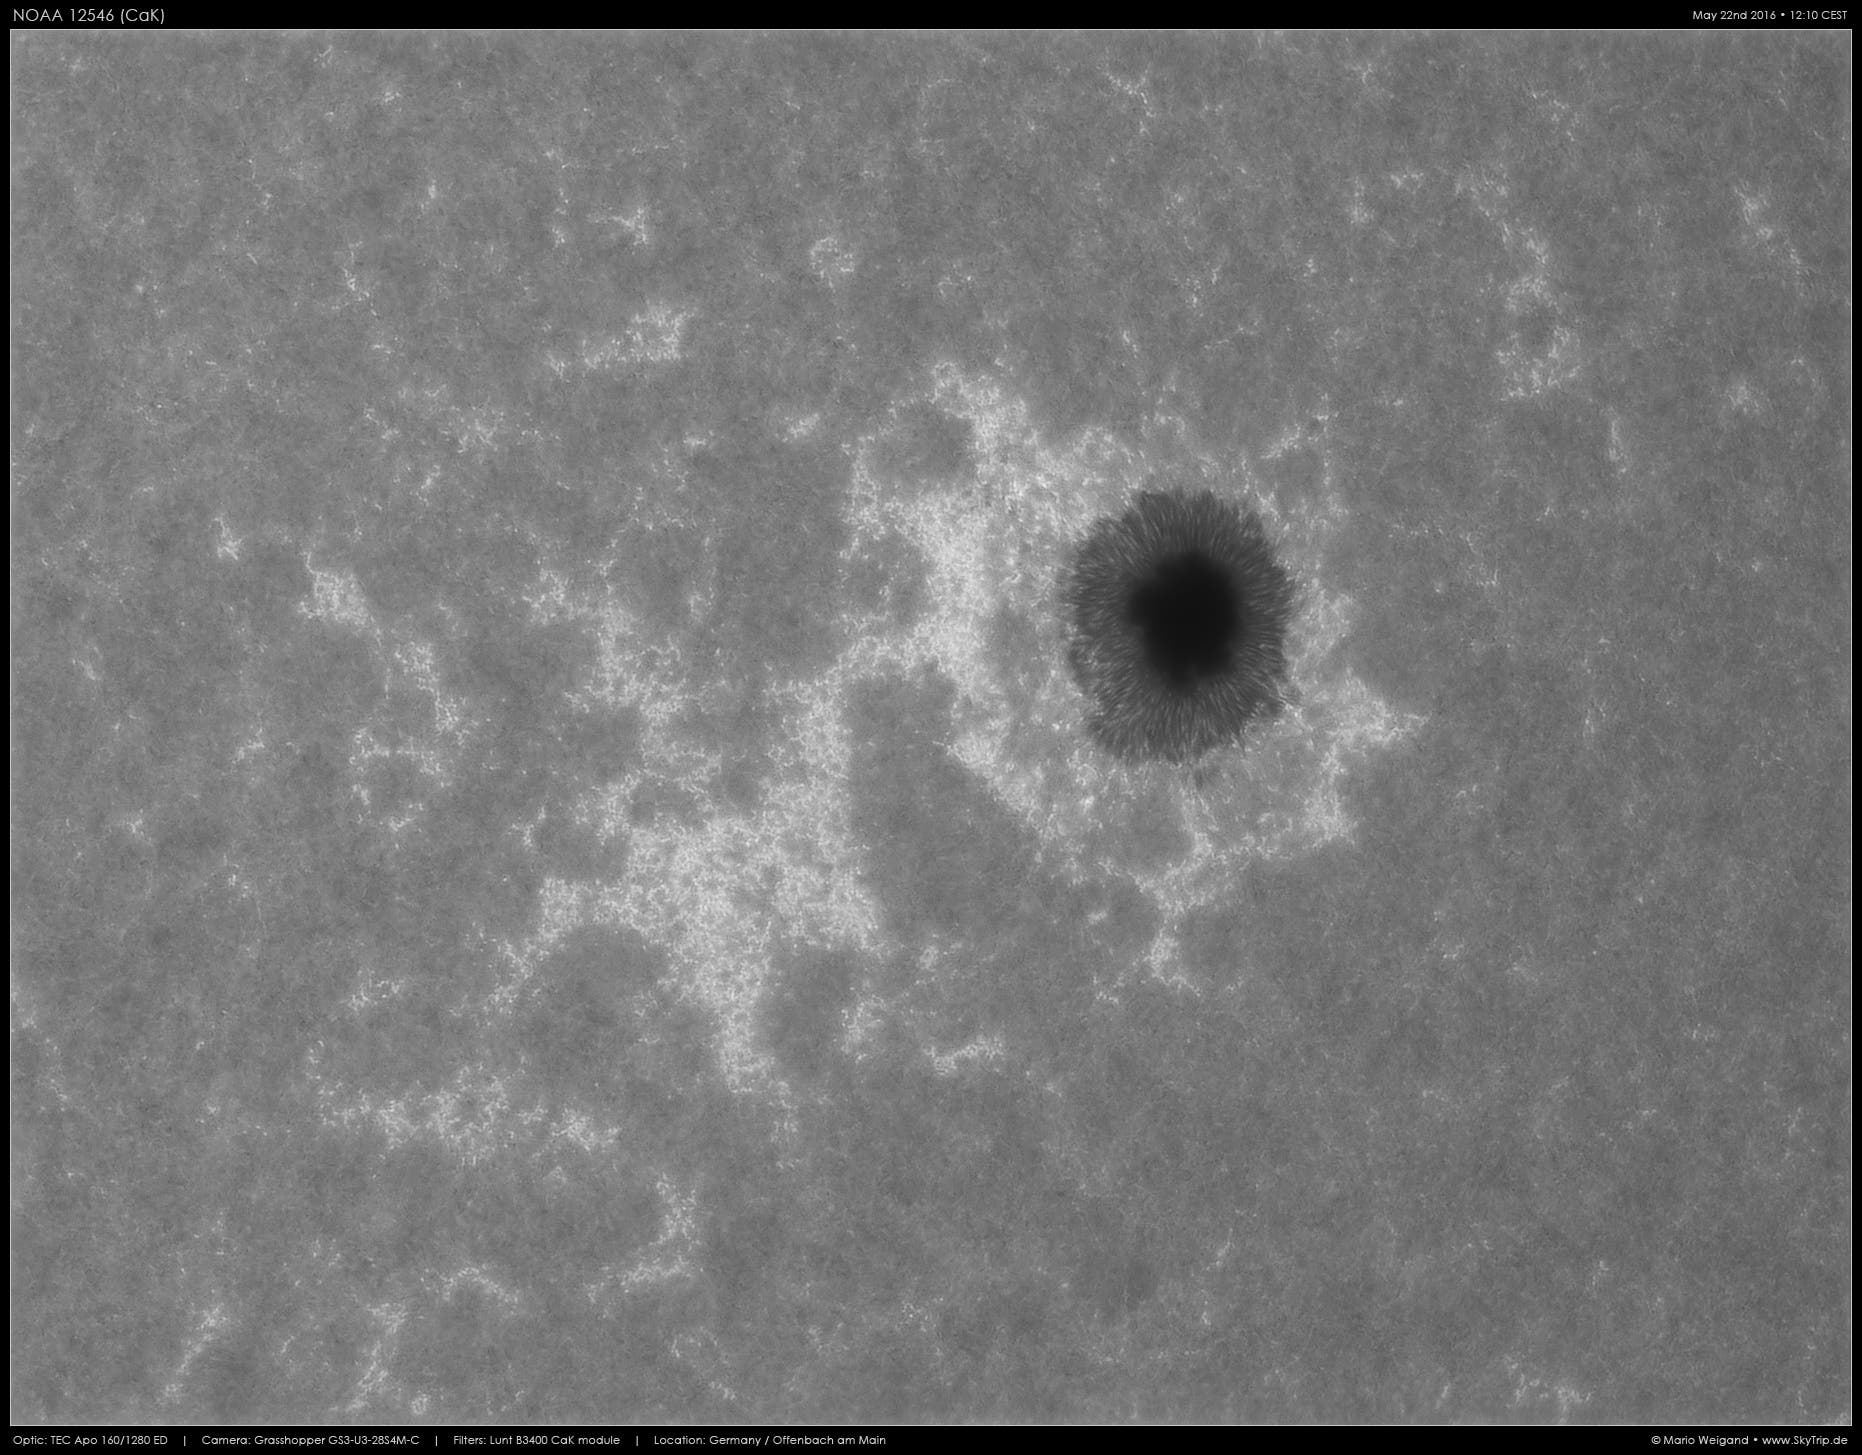 CaK-Aufnahme des großen Sonnenflecks NOAA 12546